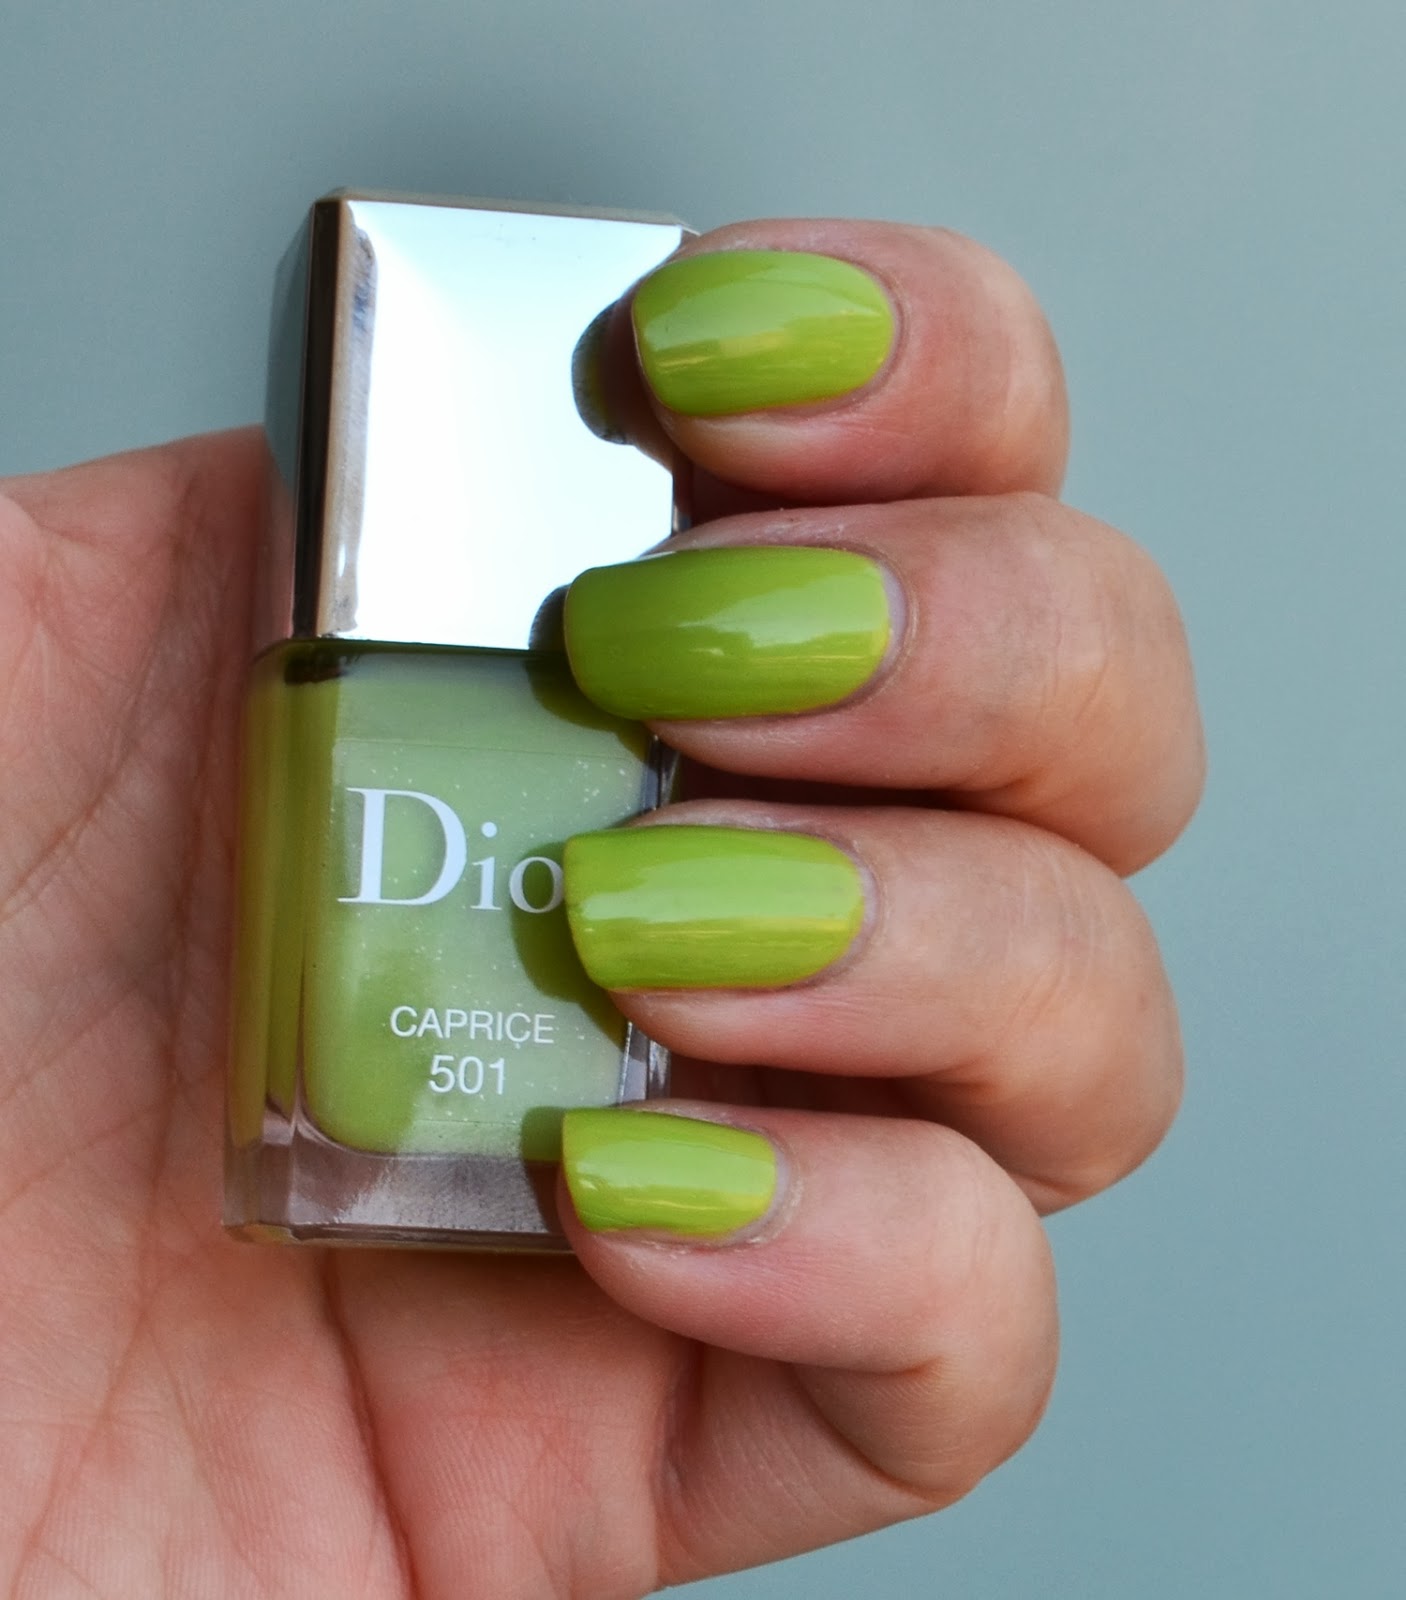 dior green nail polish